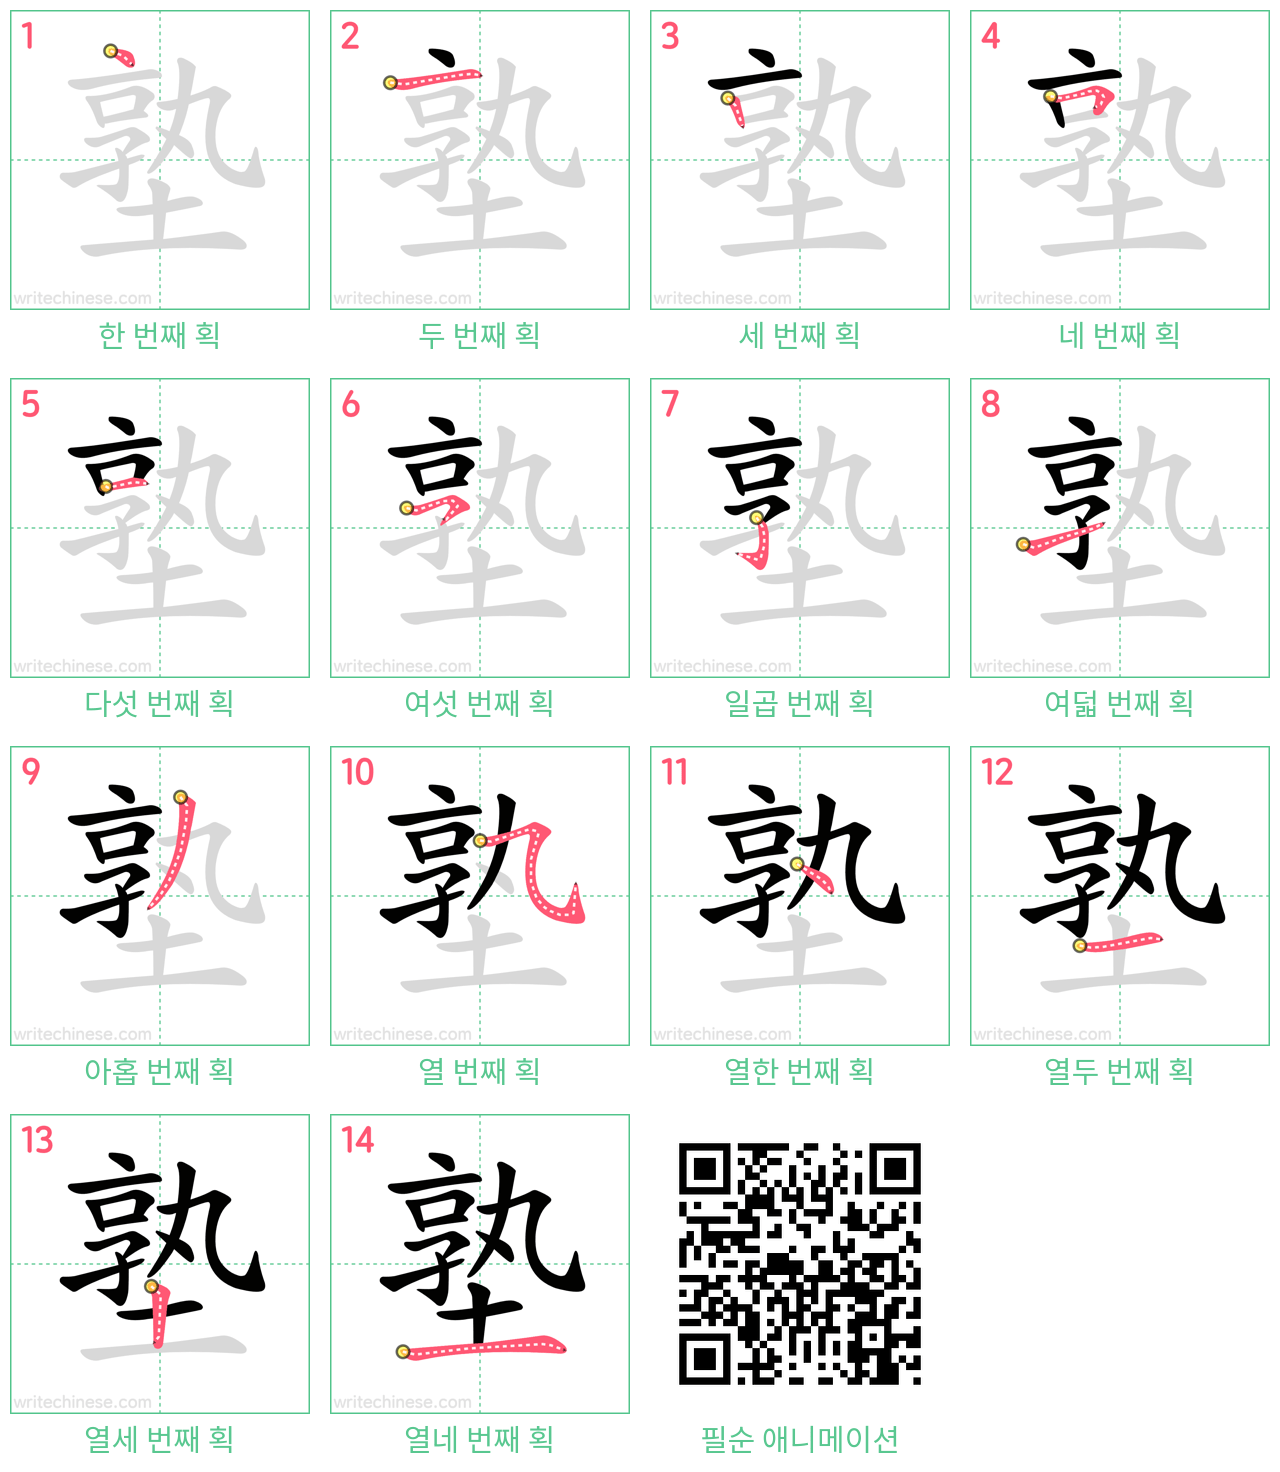 塾 step-by-step stroke order diagrams